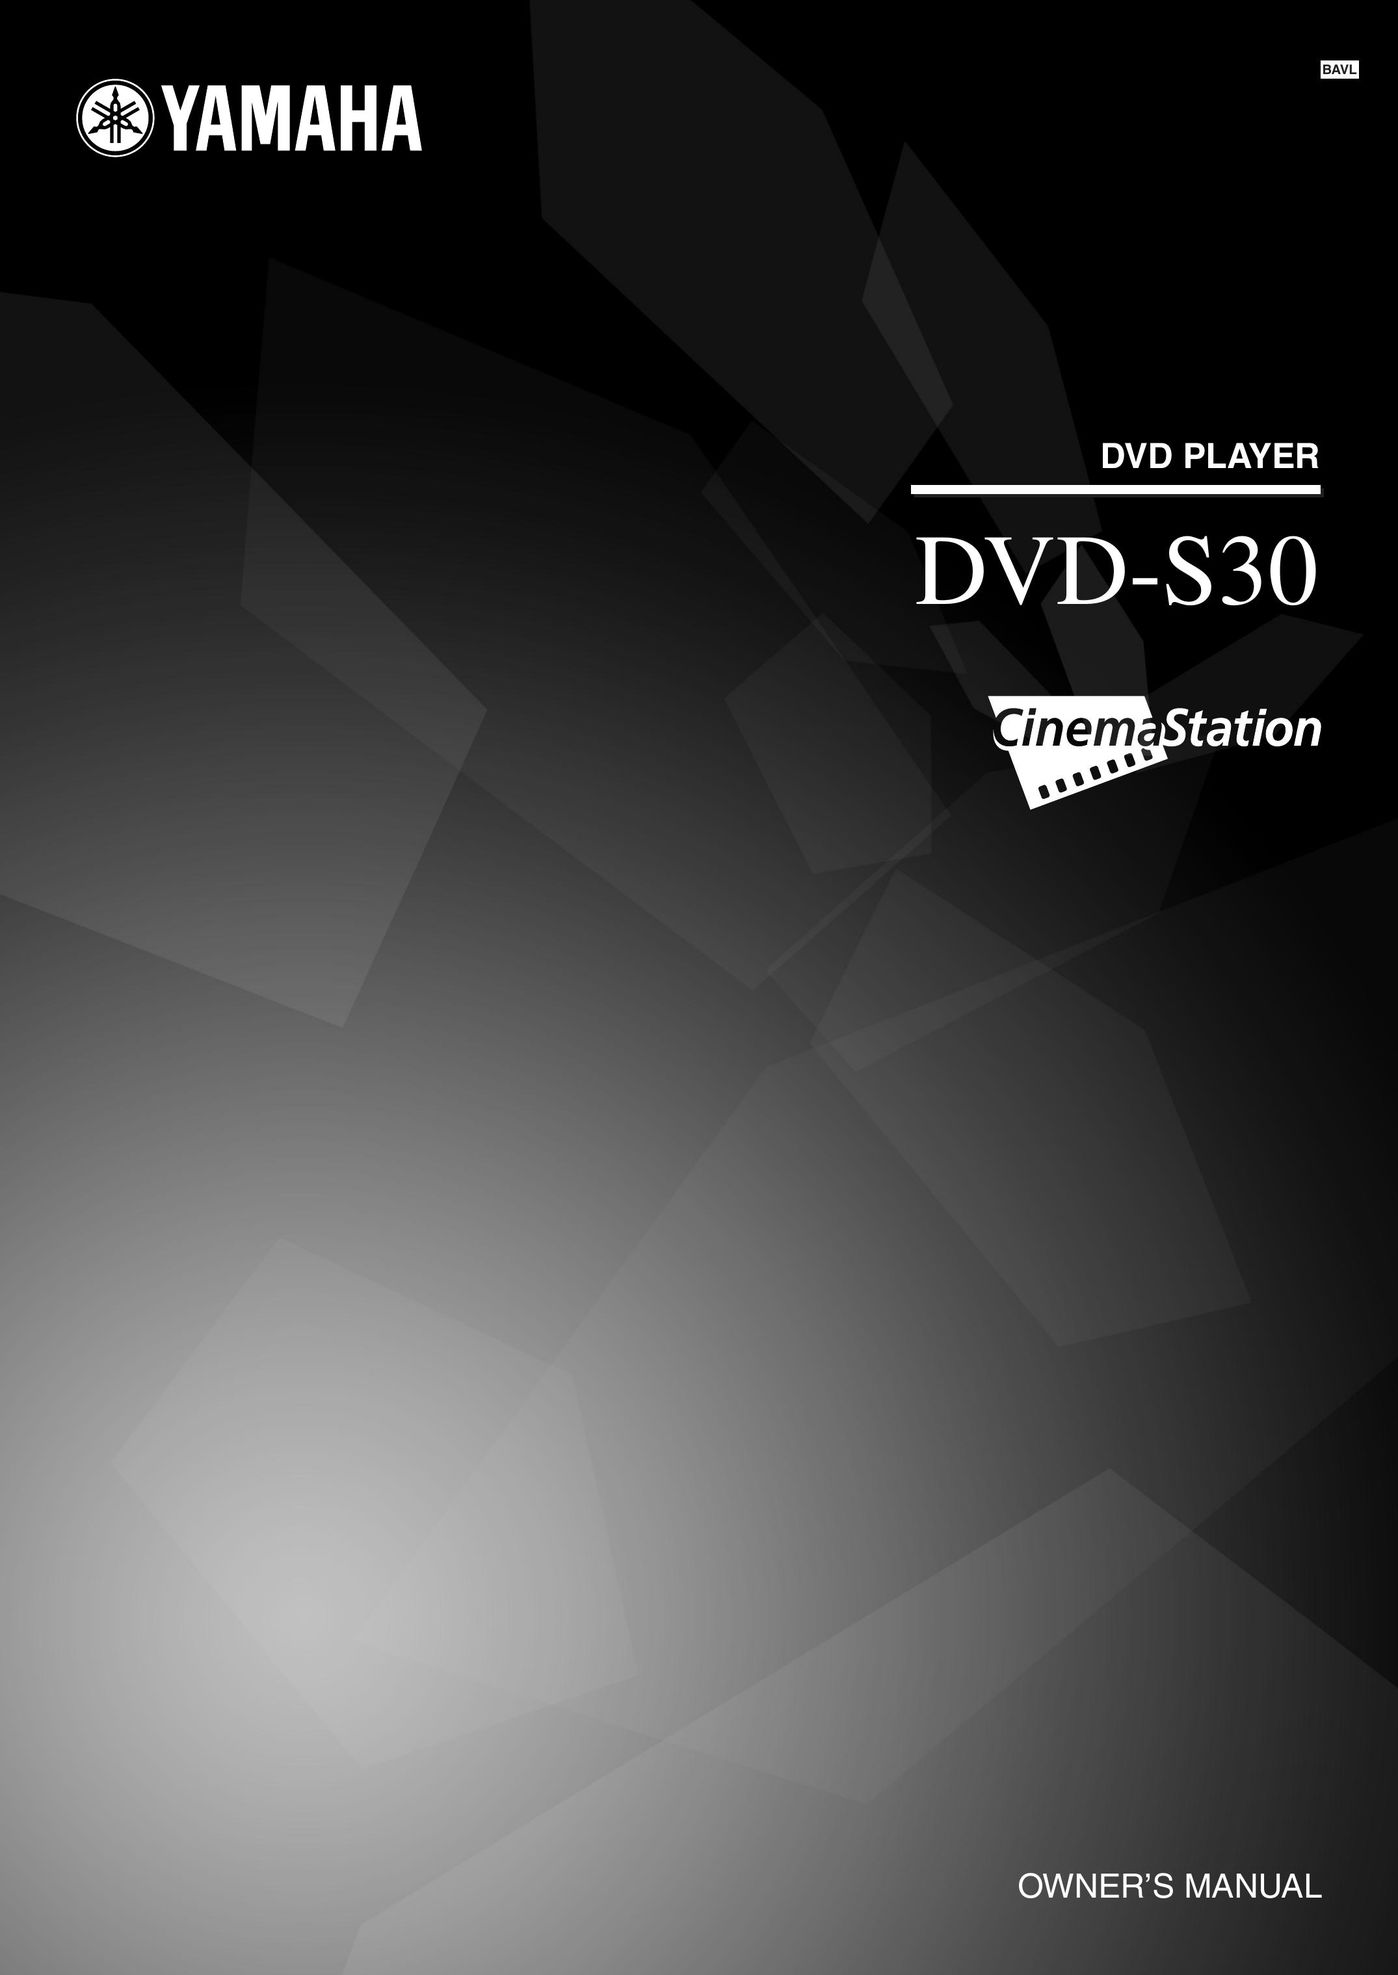 Yamaha DVD-S30 DVD Player User Manual